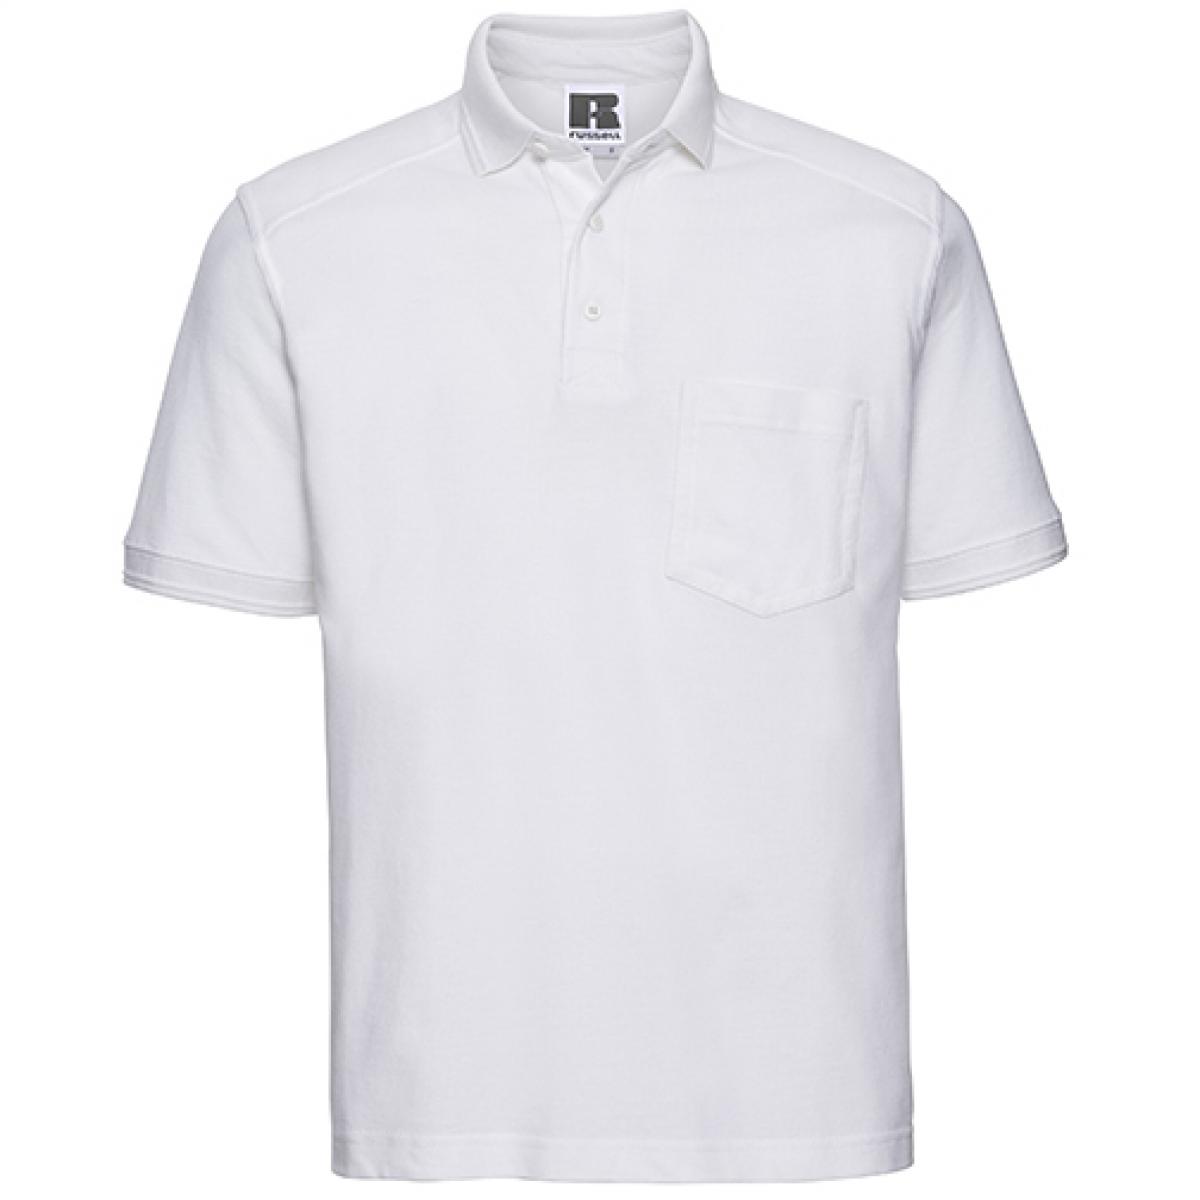 Hersteller: Russell Herstellernummer: R-011M-0 Artikelbezeichnung: Herren Workwear-Poloshirt - Waschbar bis 60 °C Farbe: White